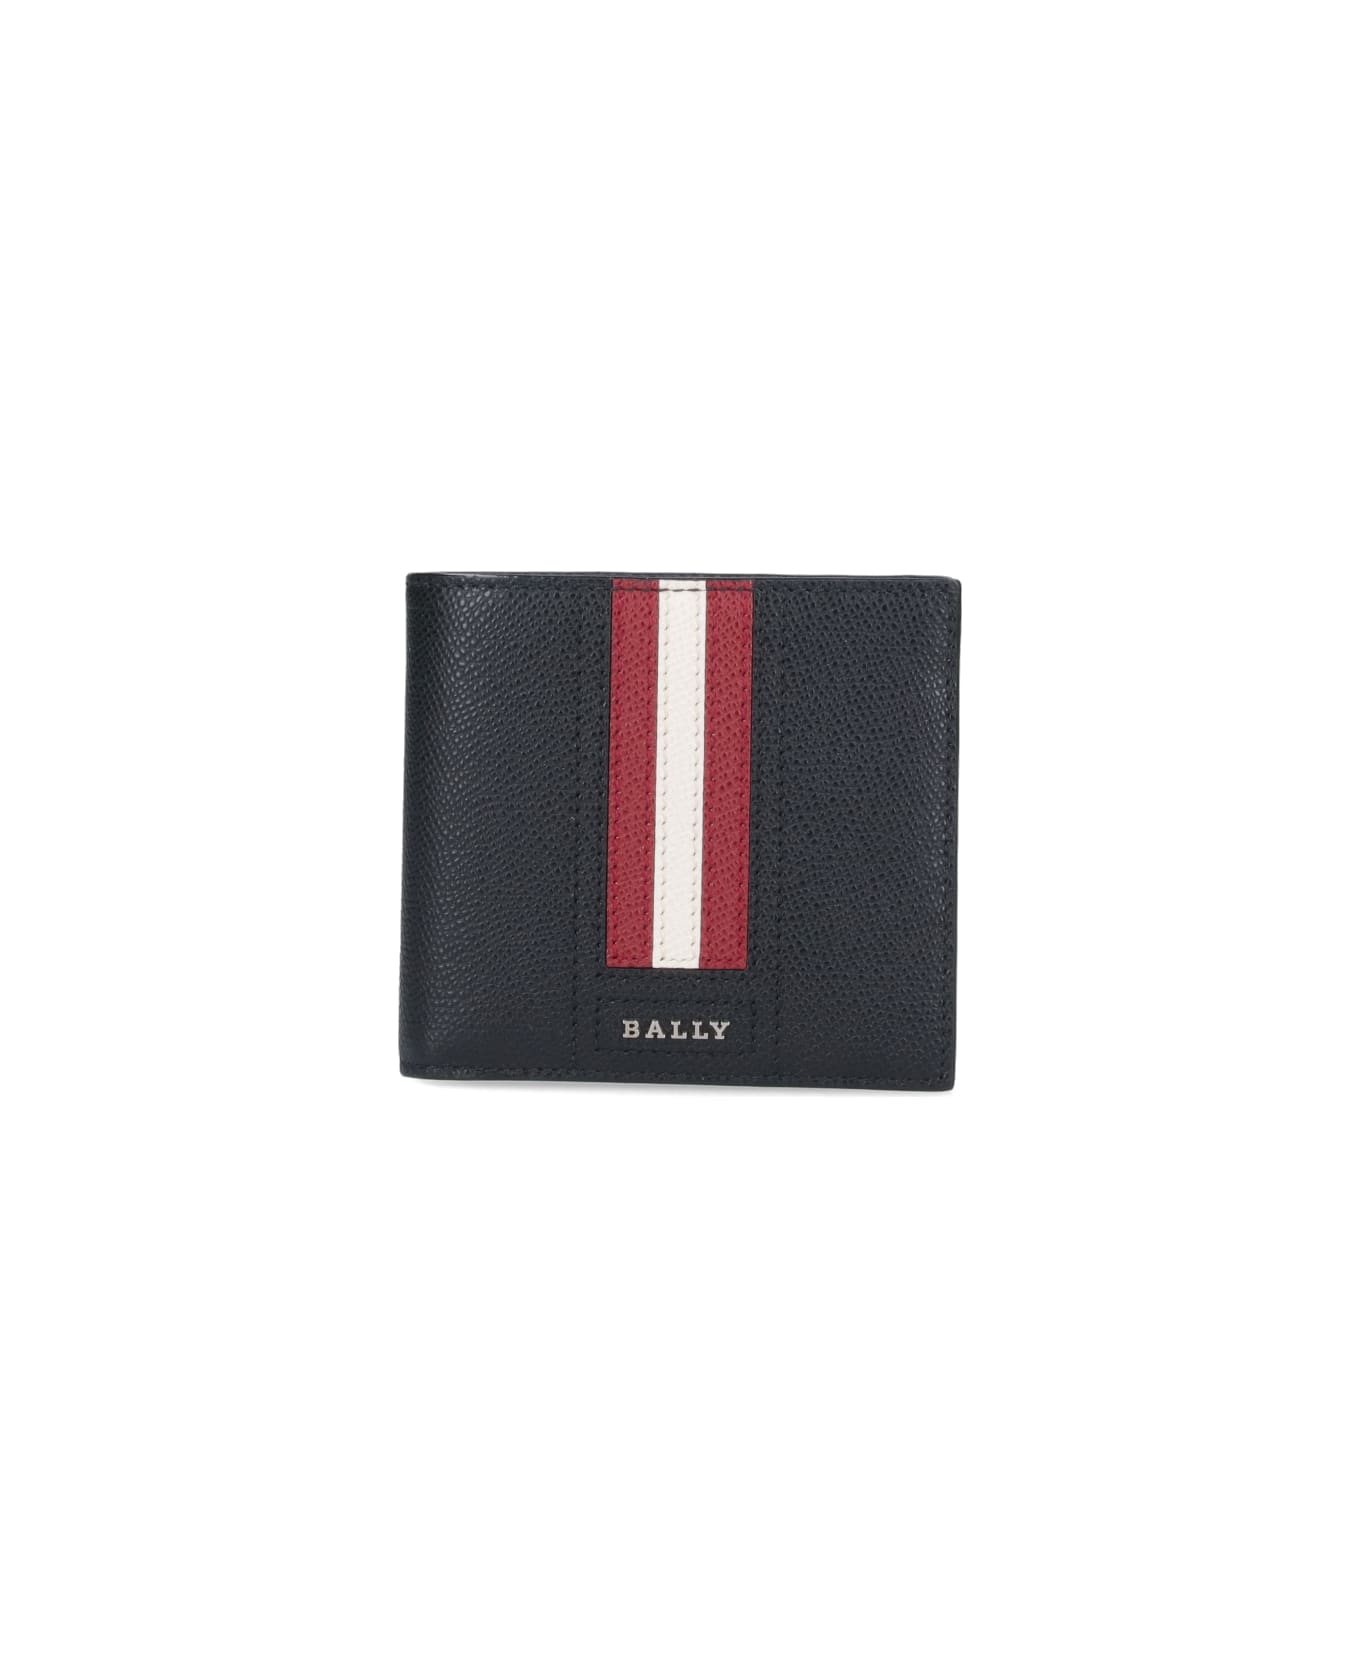 Bally Logo Wallet - Black  